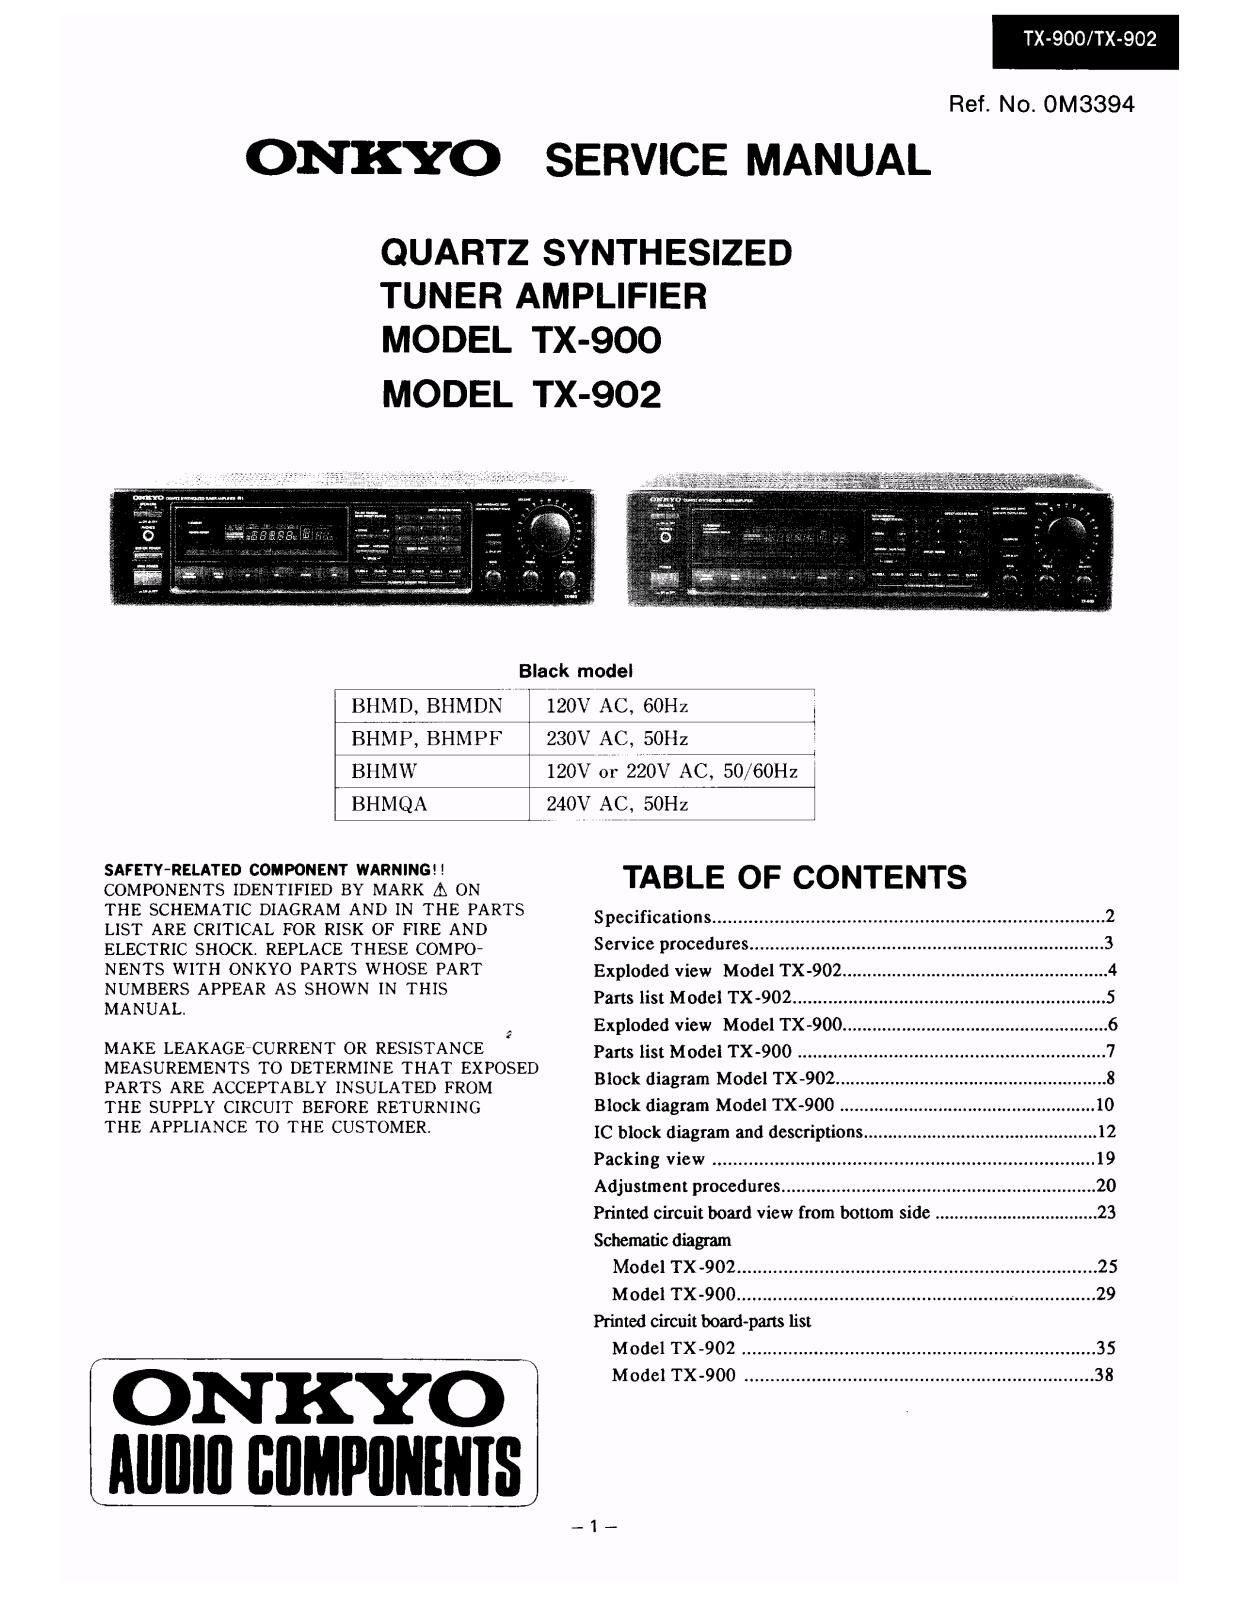 Onkyo TX-902, TX-900 Service Manual